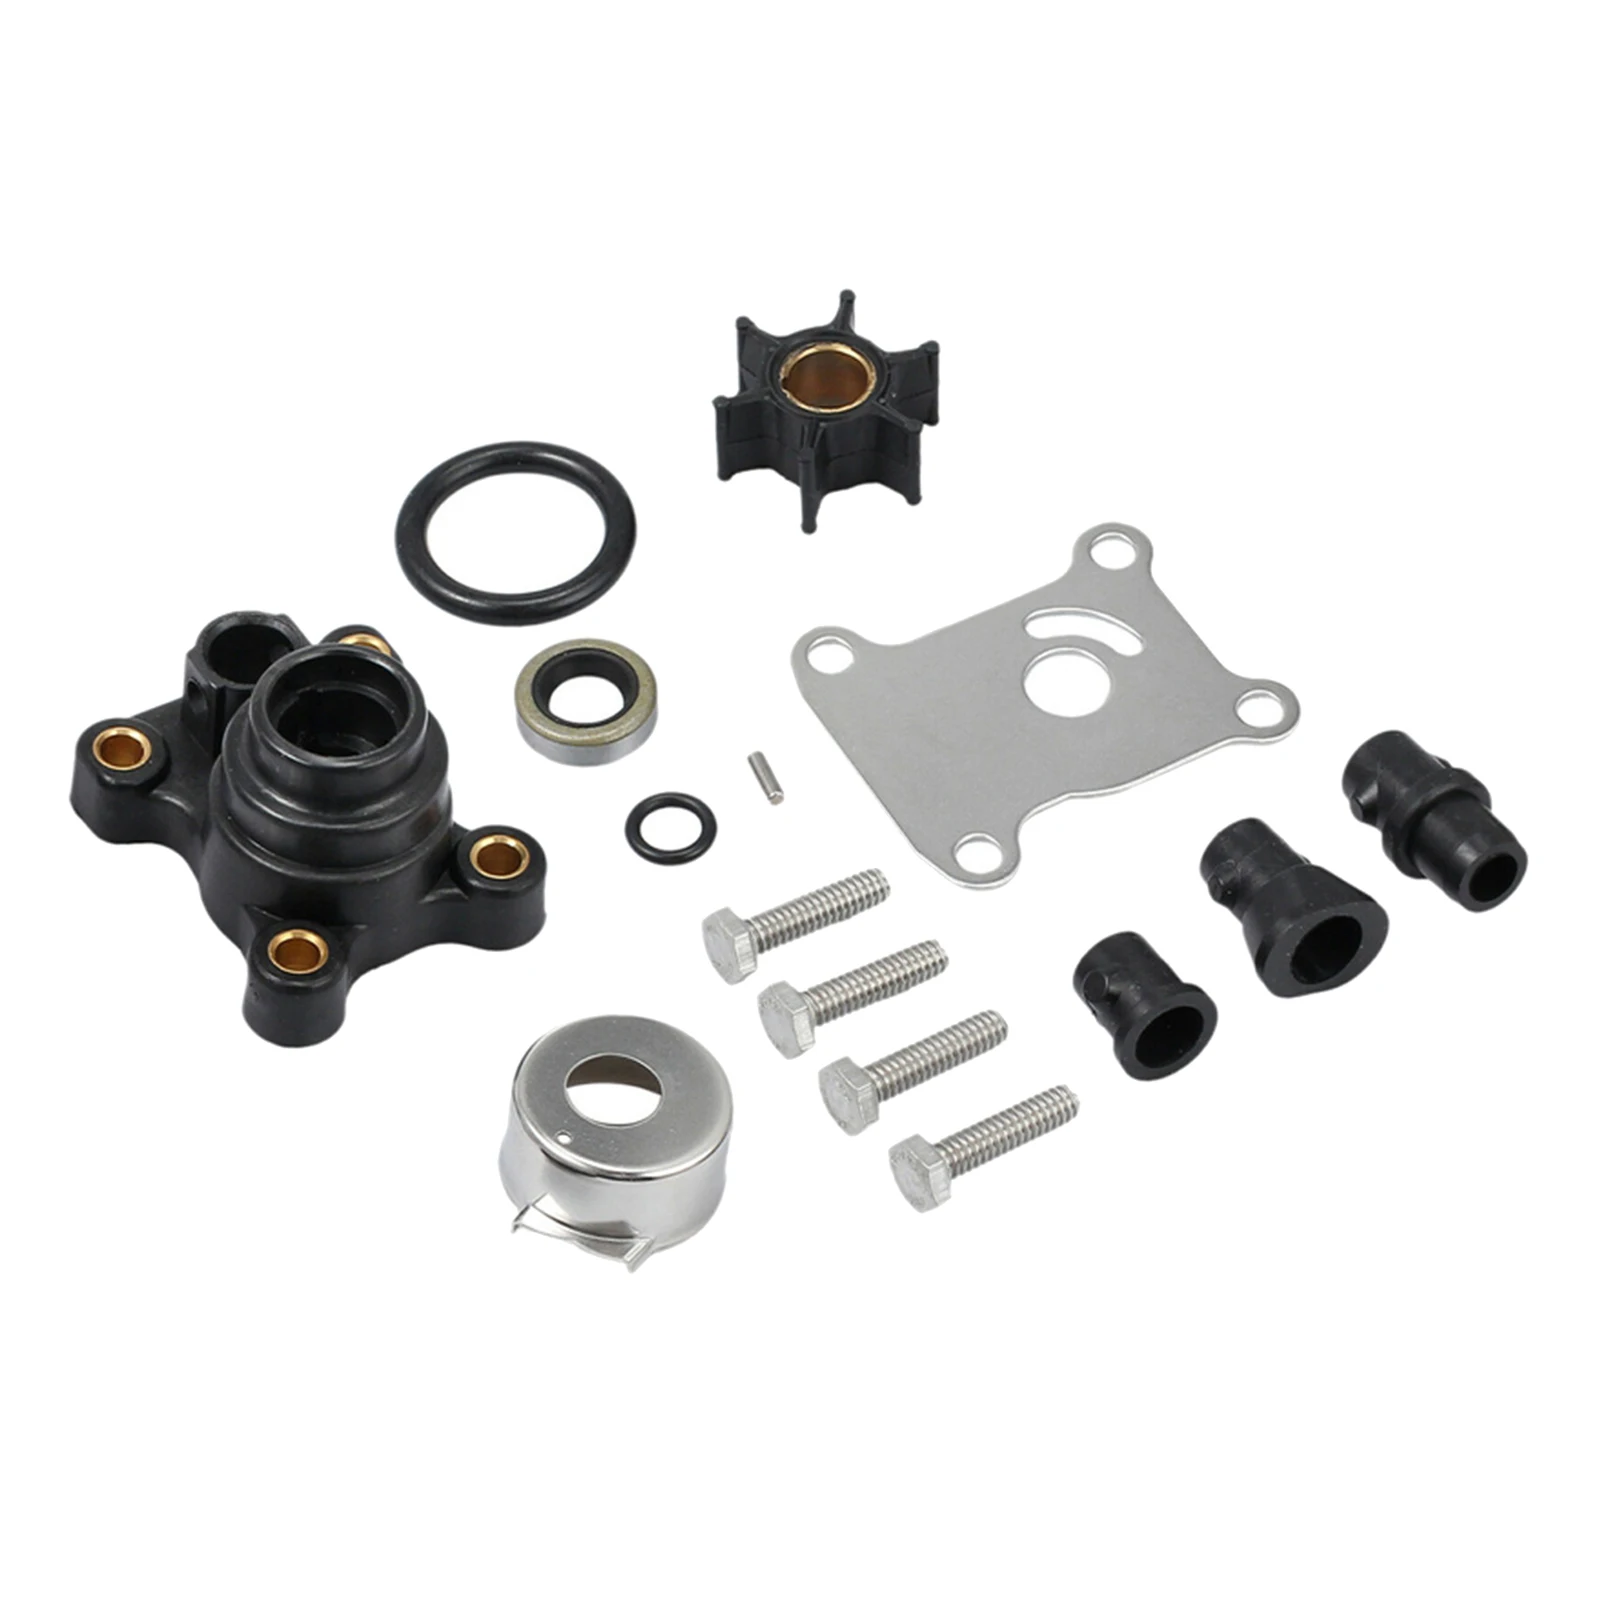 Water Pump Impeller Kit for Johnson Evinrude 2 & 4 STROKE 9.9 15 HP 0394711